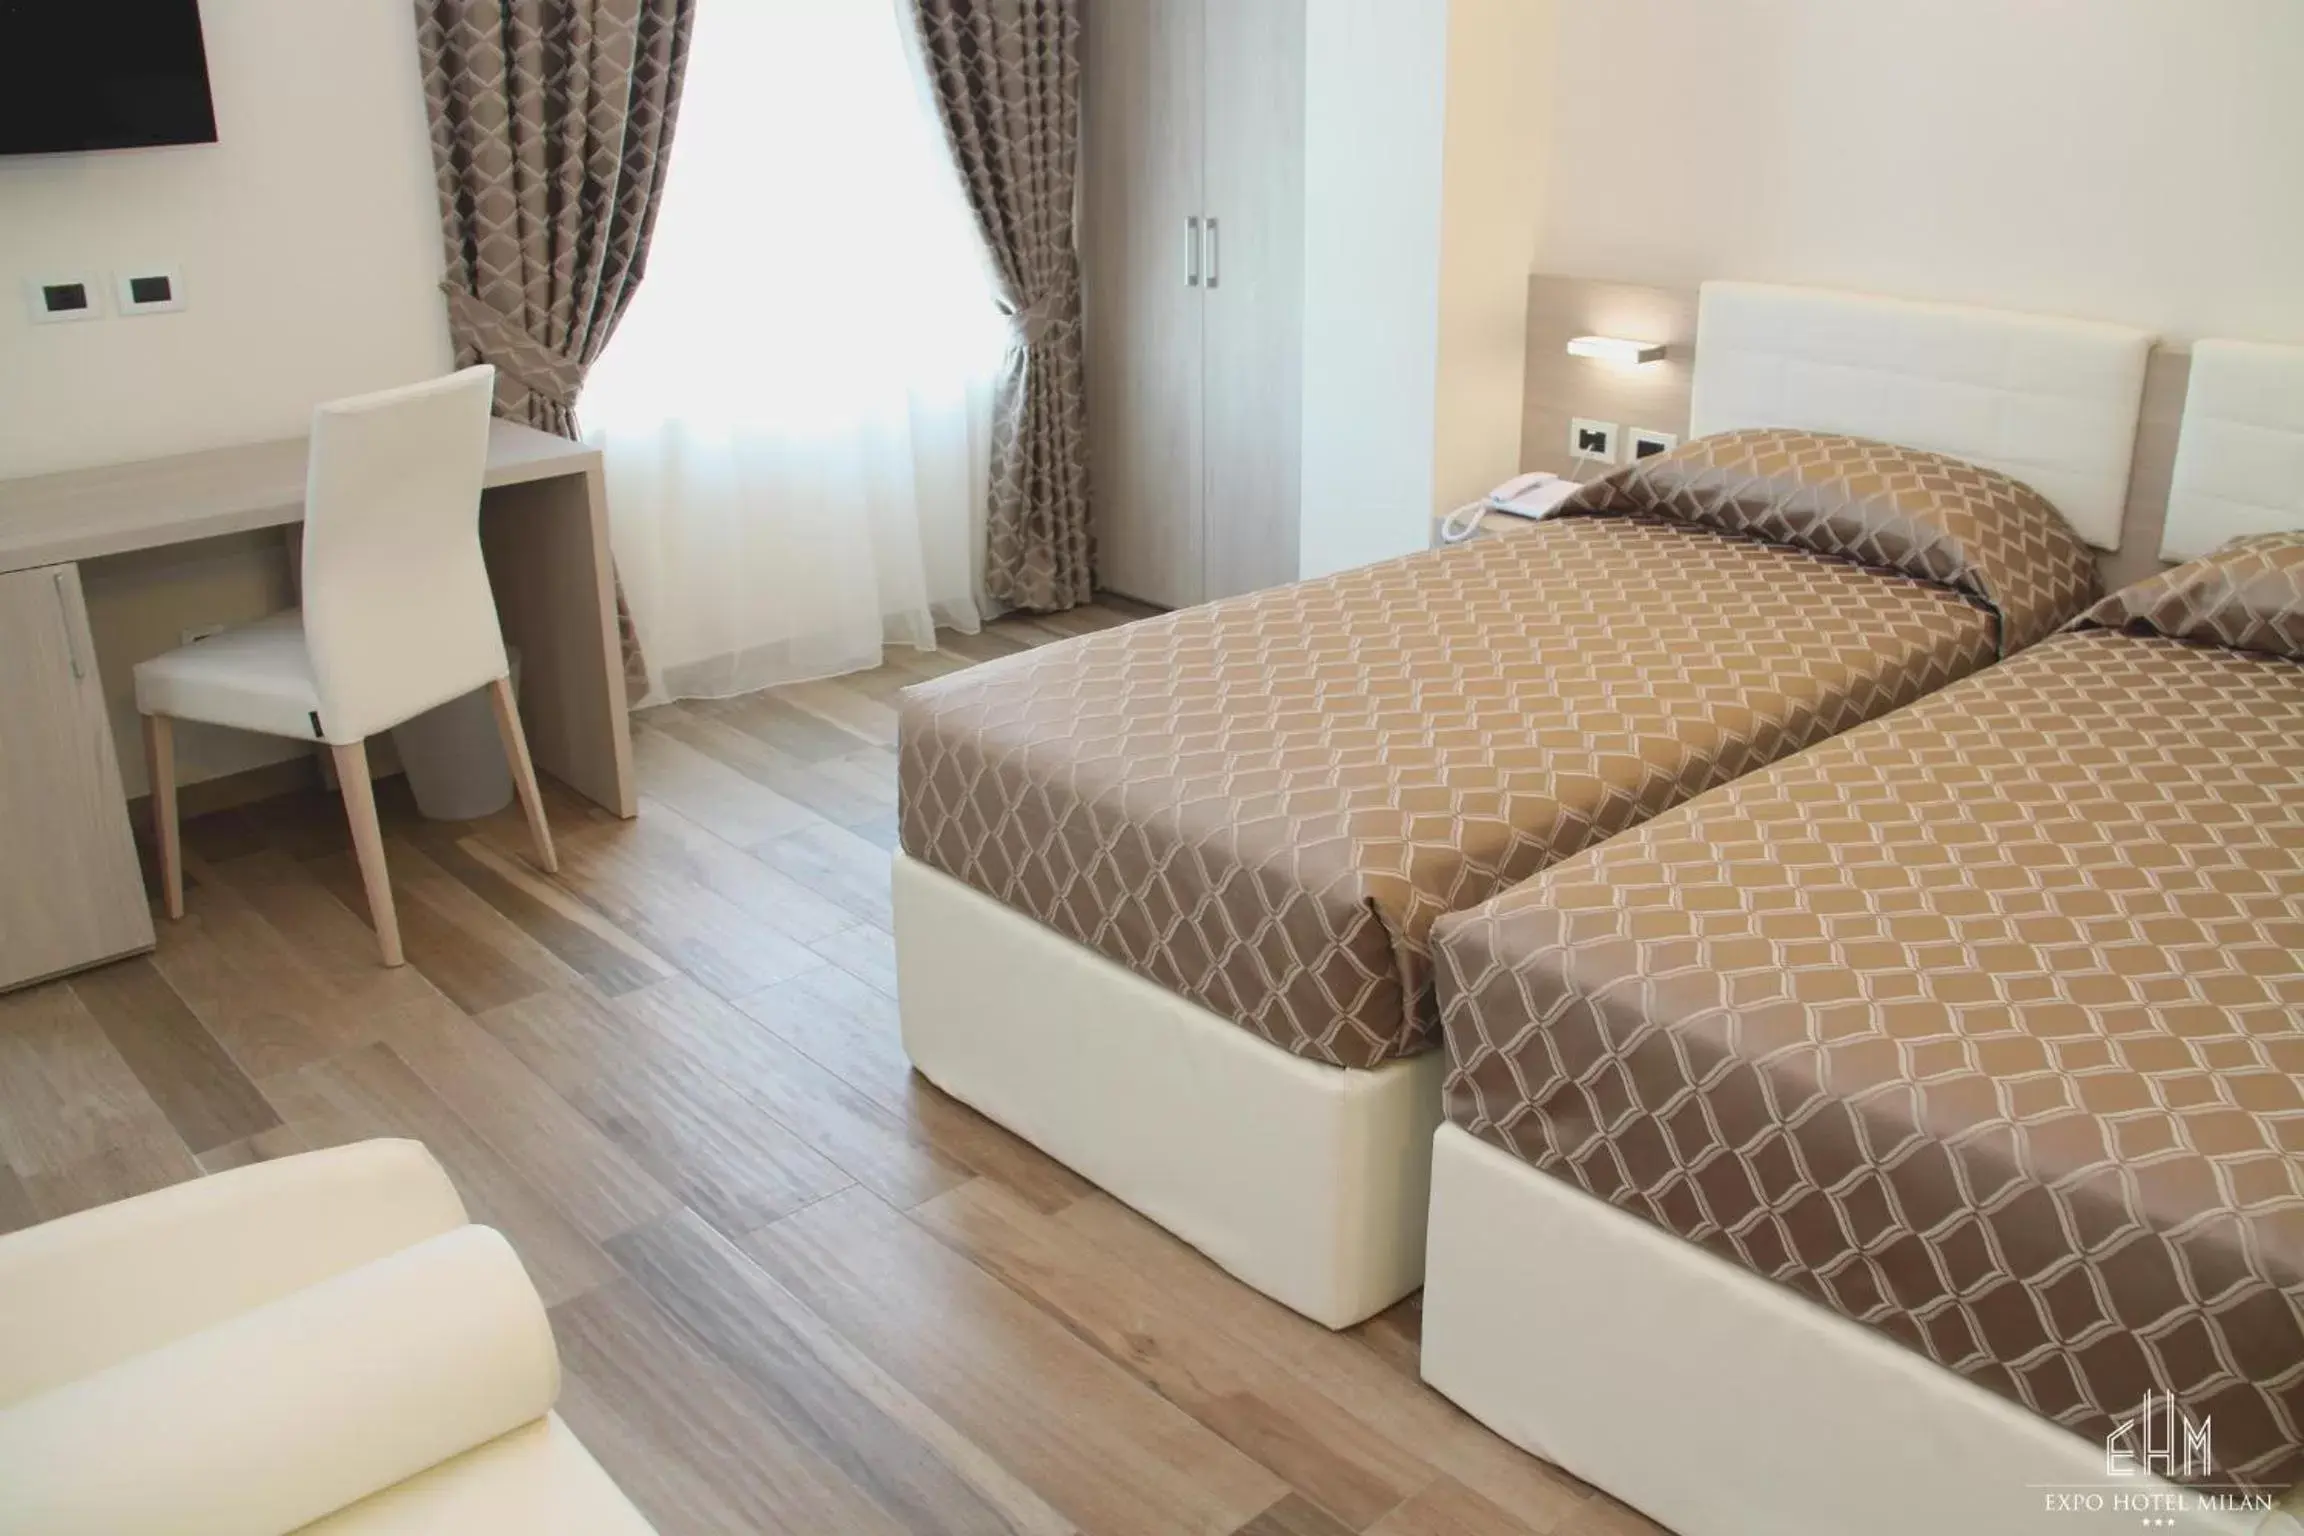 Bedroom, Bed in Expo Hotel Milan